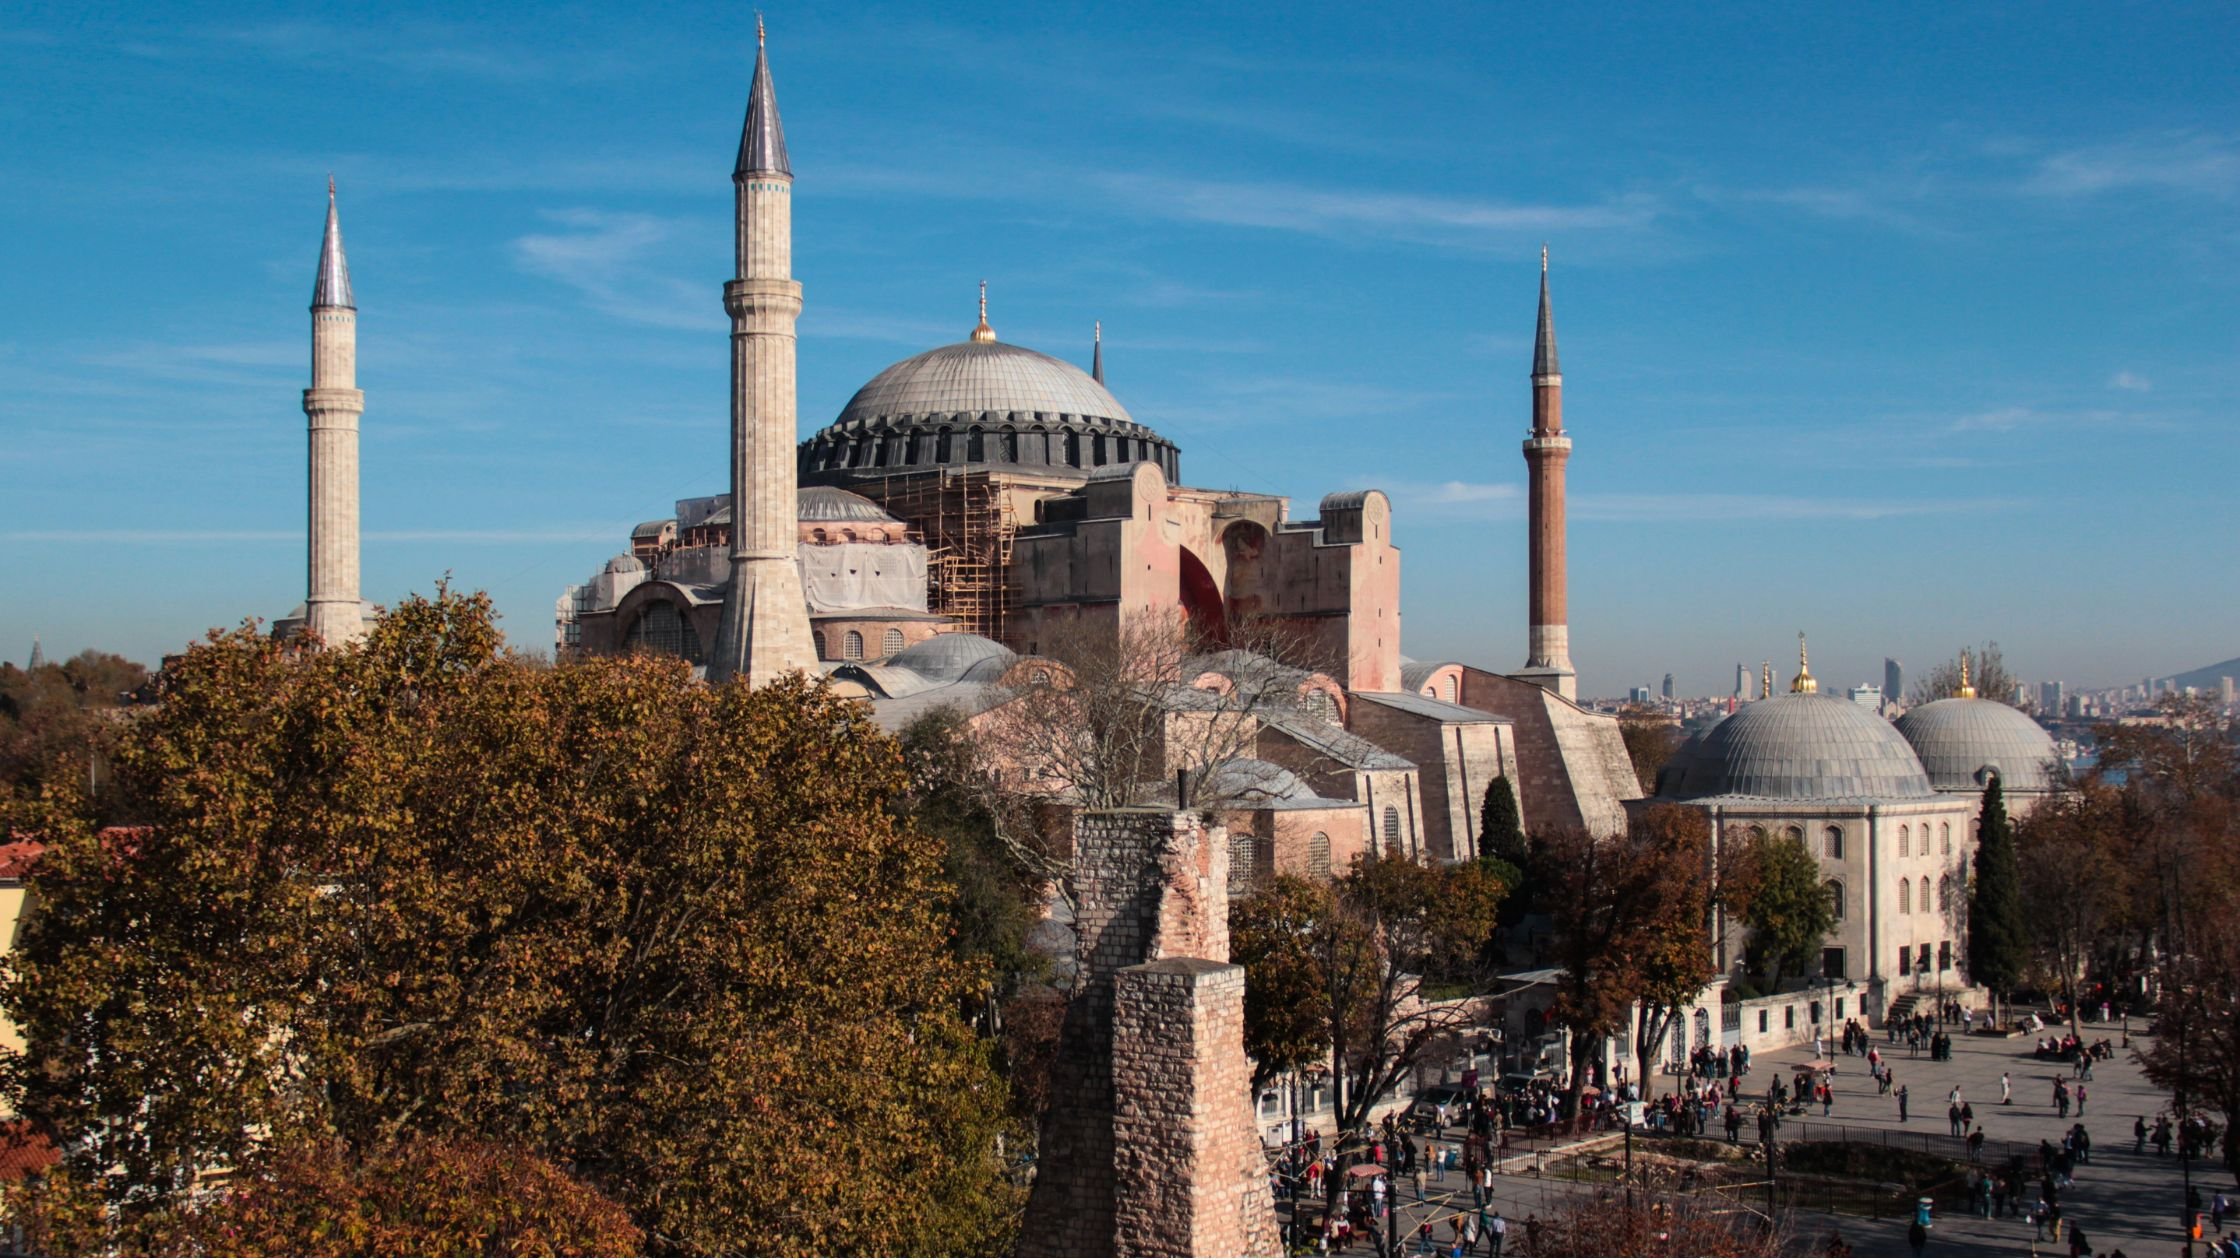 Santa Sofía o Hagia Sophia es una antigua basílica ortodoxa, posteriormente convertida en mezquita